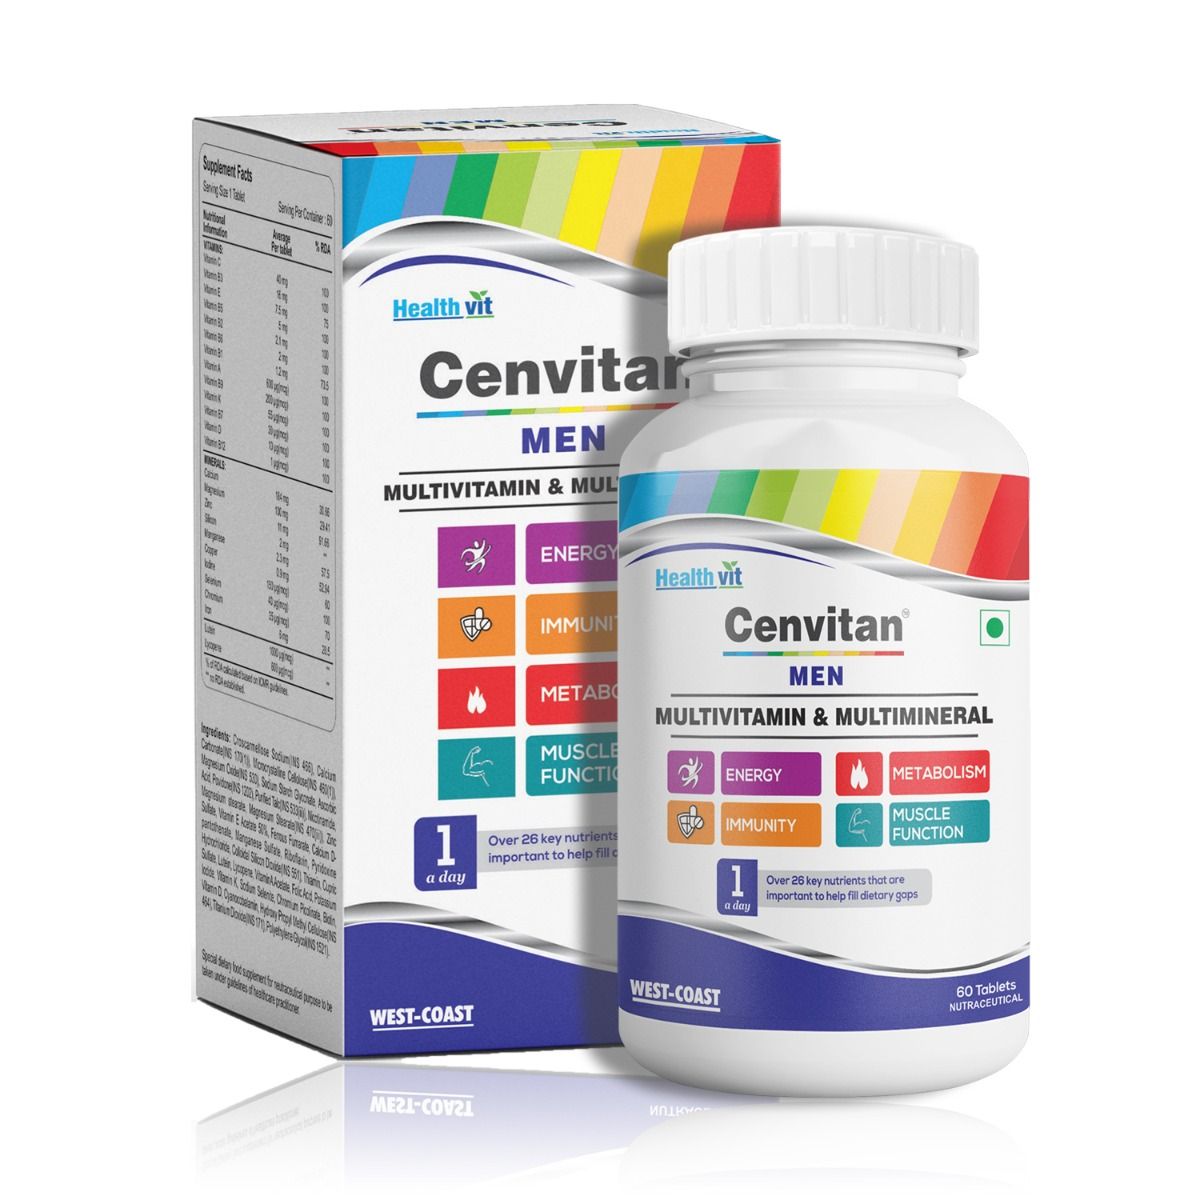 Healthvit Cenvitan Men Multivitamin & Multimineral, 60 Tablets, Pack of 1 